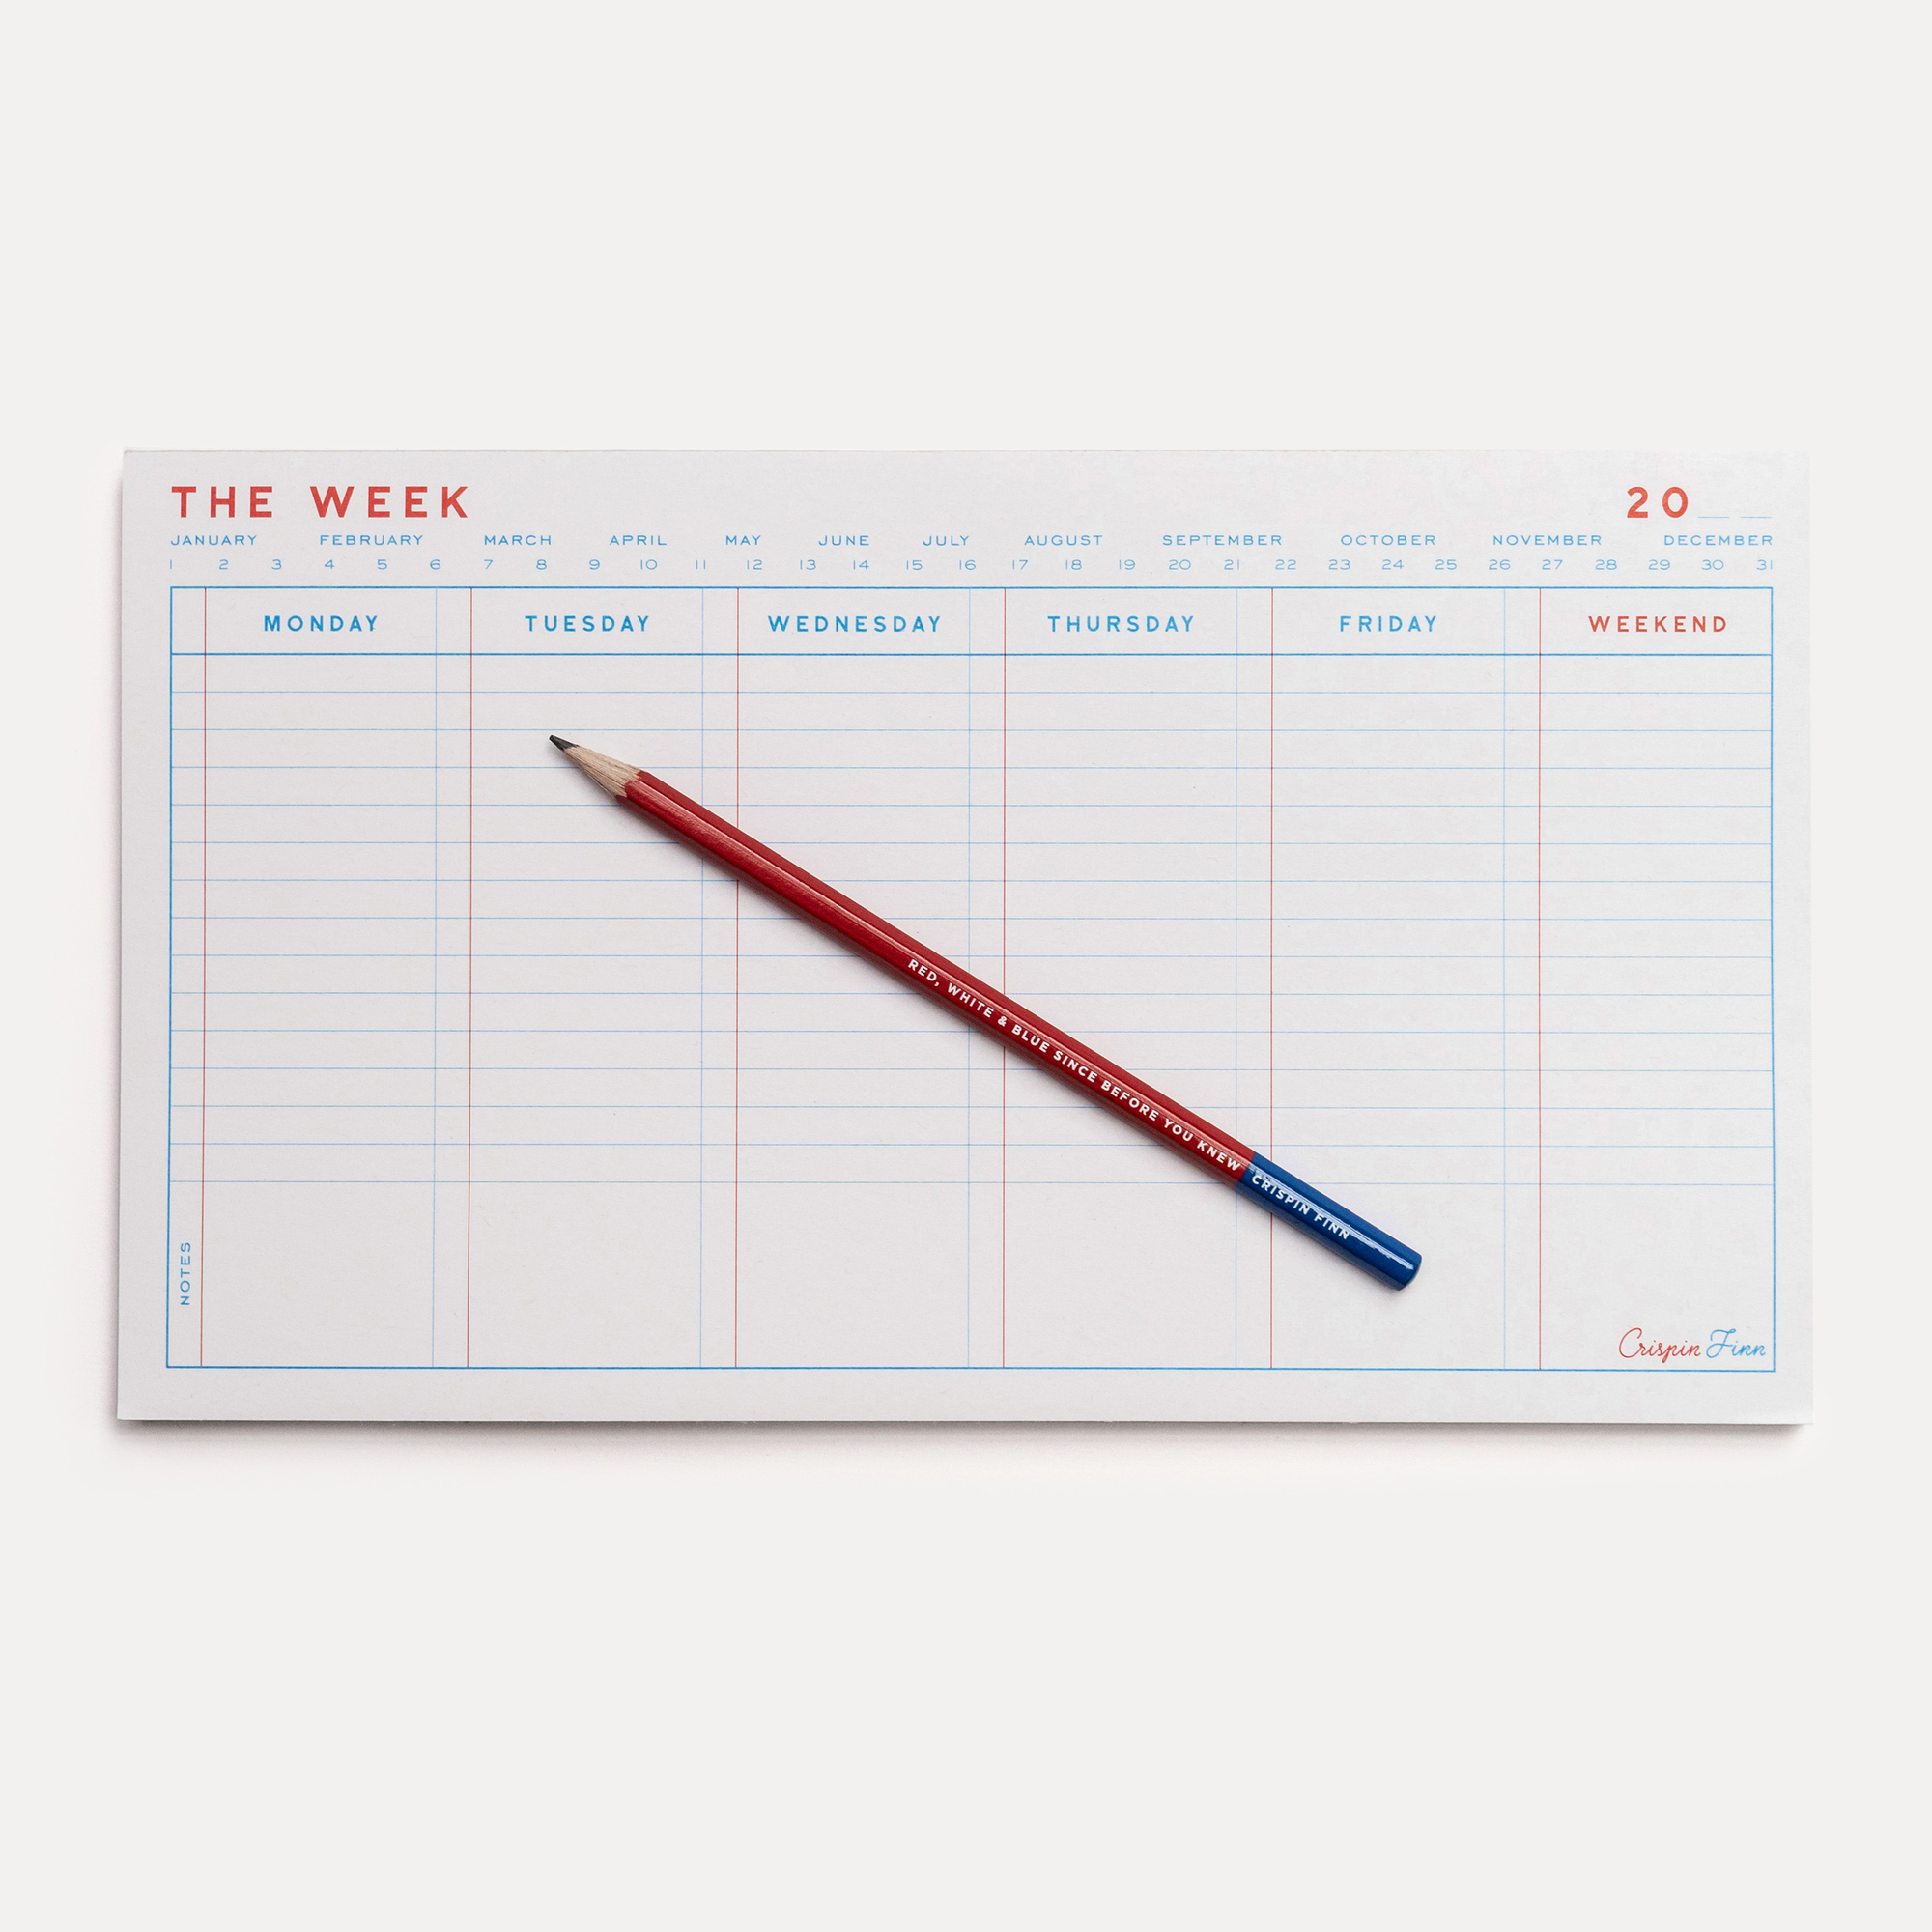 The Week Desk Pad by Crispin Flinn